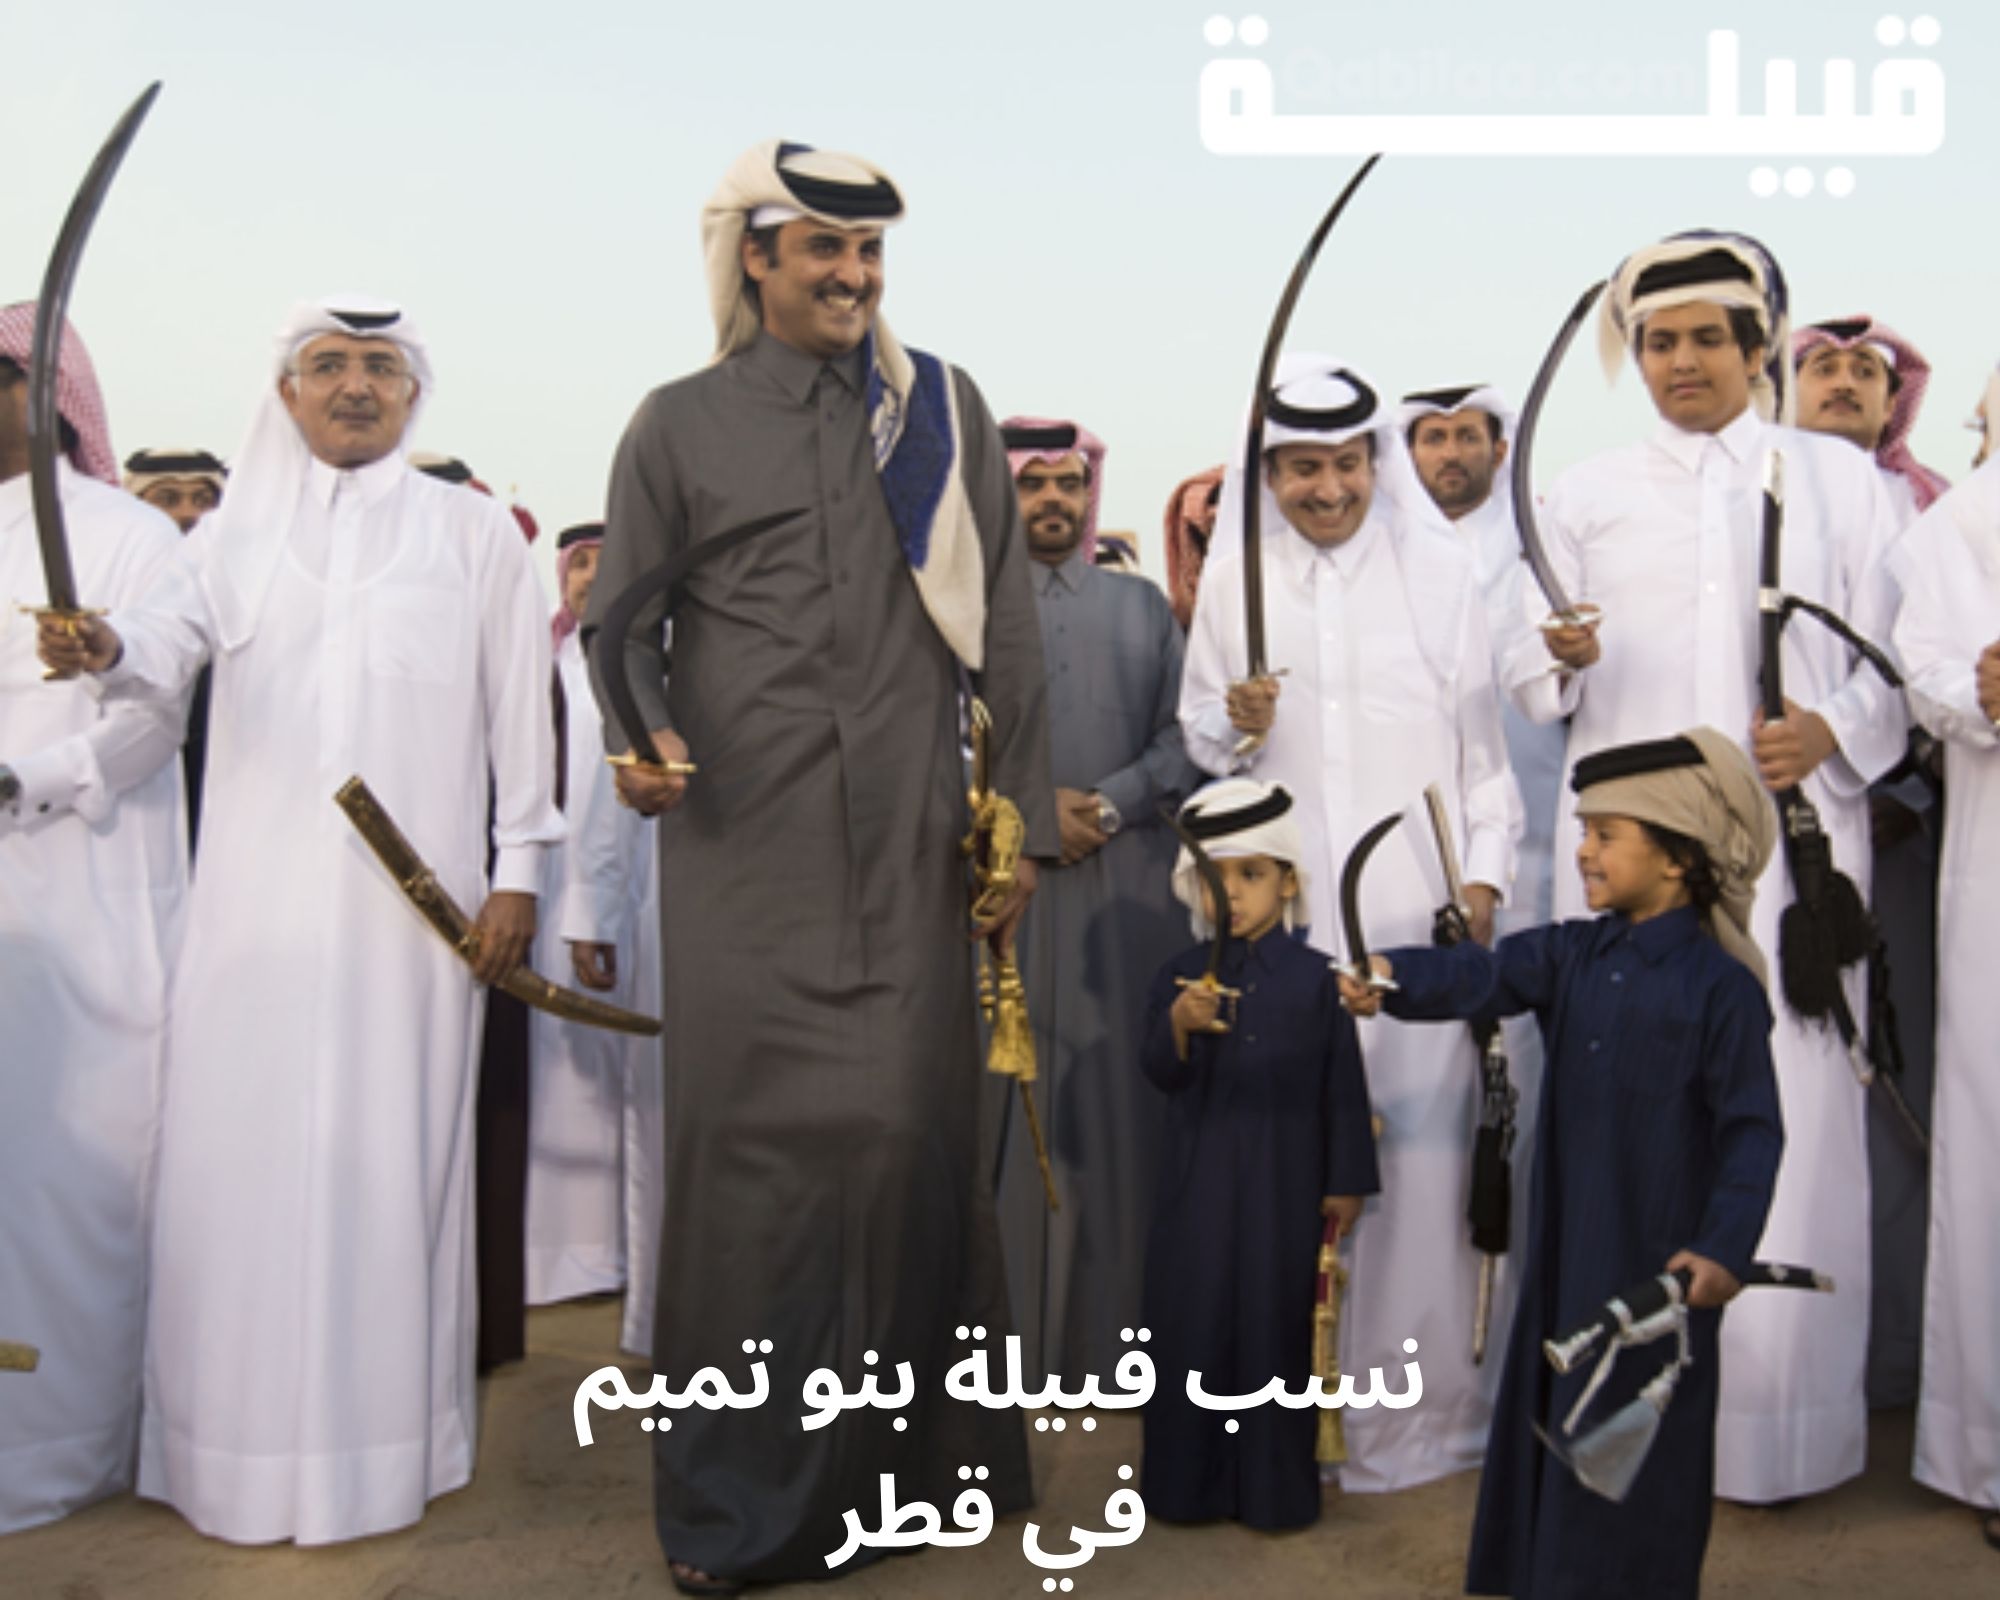 قبيلة بنو تميم في قطر